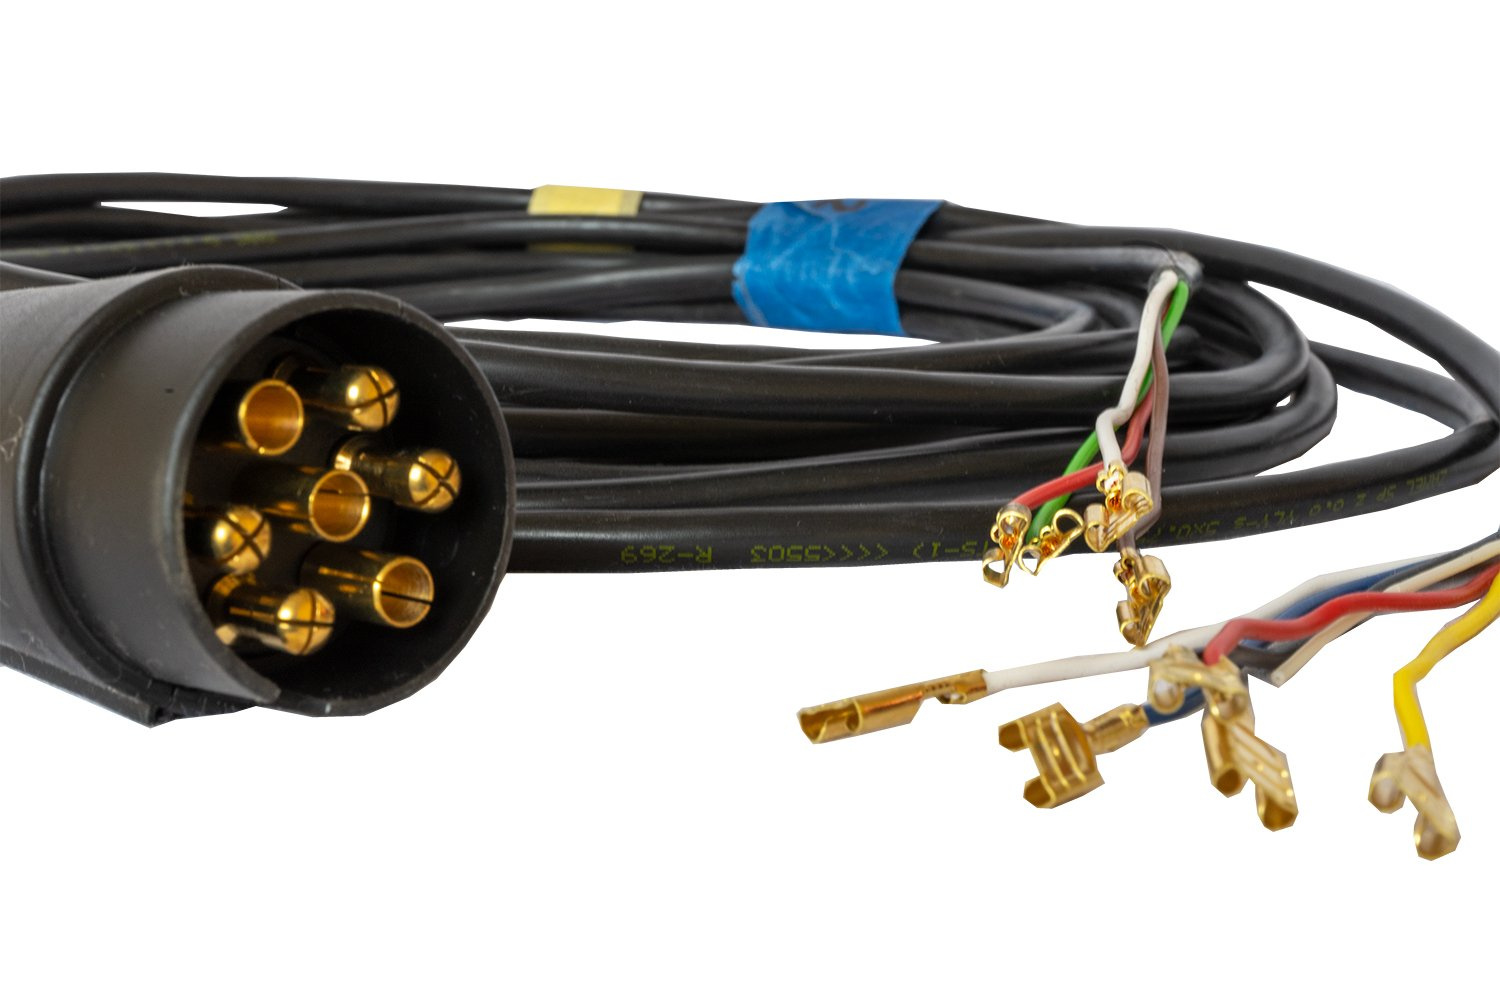 Voorkeur Kijkgat Reageer De kabel voor de aanhanger met een 7-polige stekker zonder bajonetten met  een draaddoorsnede van 0,75 mm en een lengte van 4 m - UNITRAILER